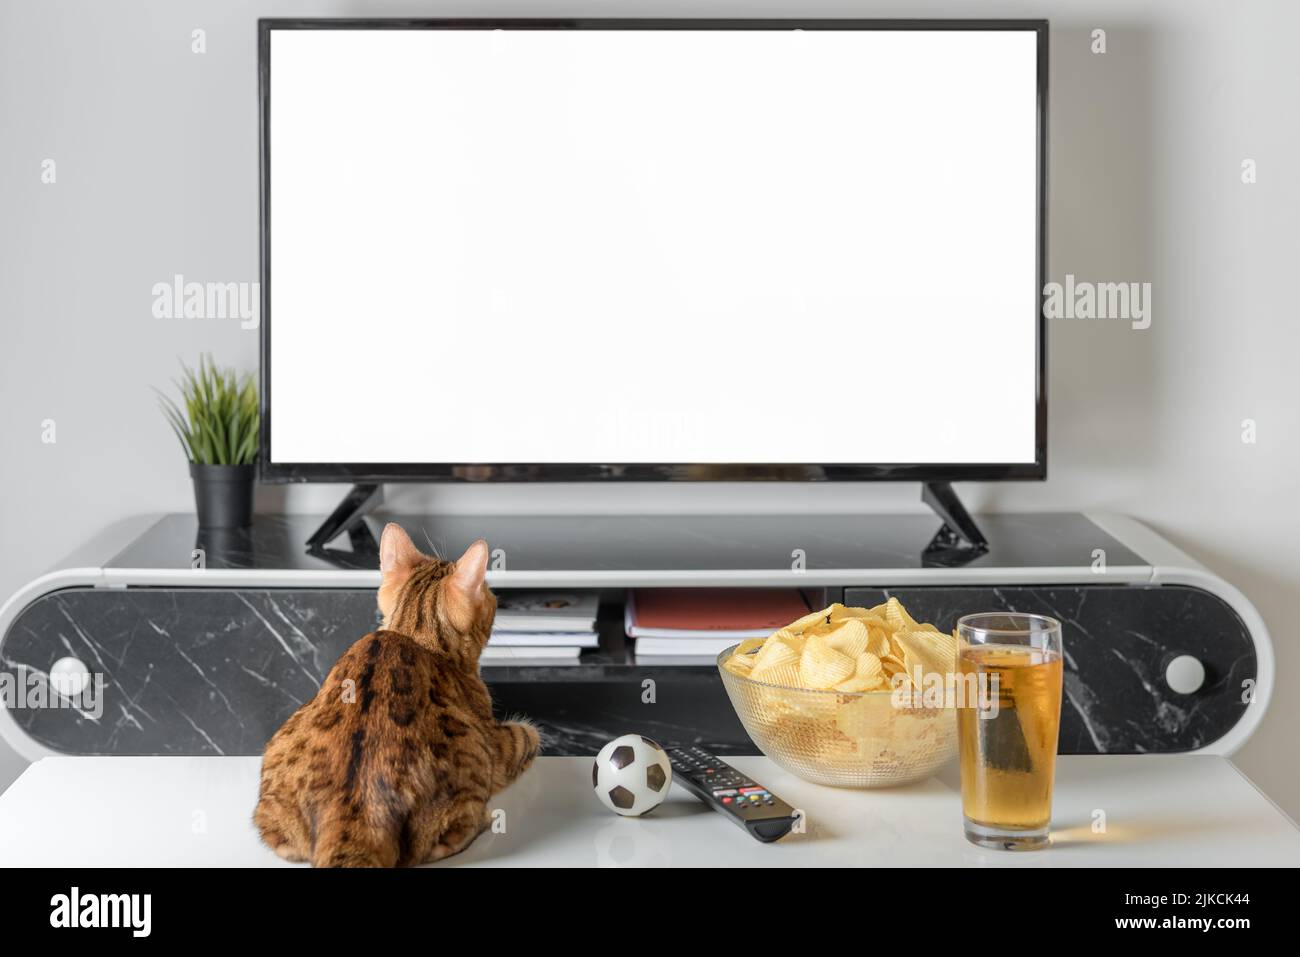 Katze, Bier und Snacks auf dem Hintergrund eines leeren Fernsehbildschirms. Leere Vorlage. Stockfoto